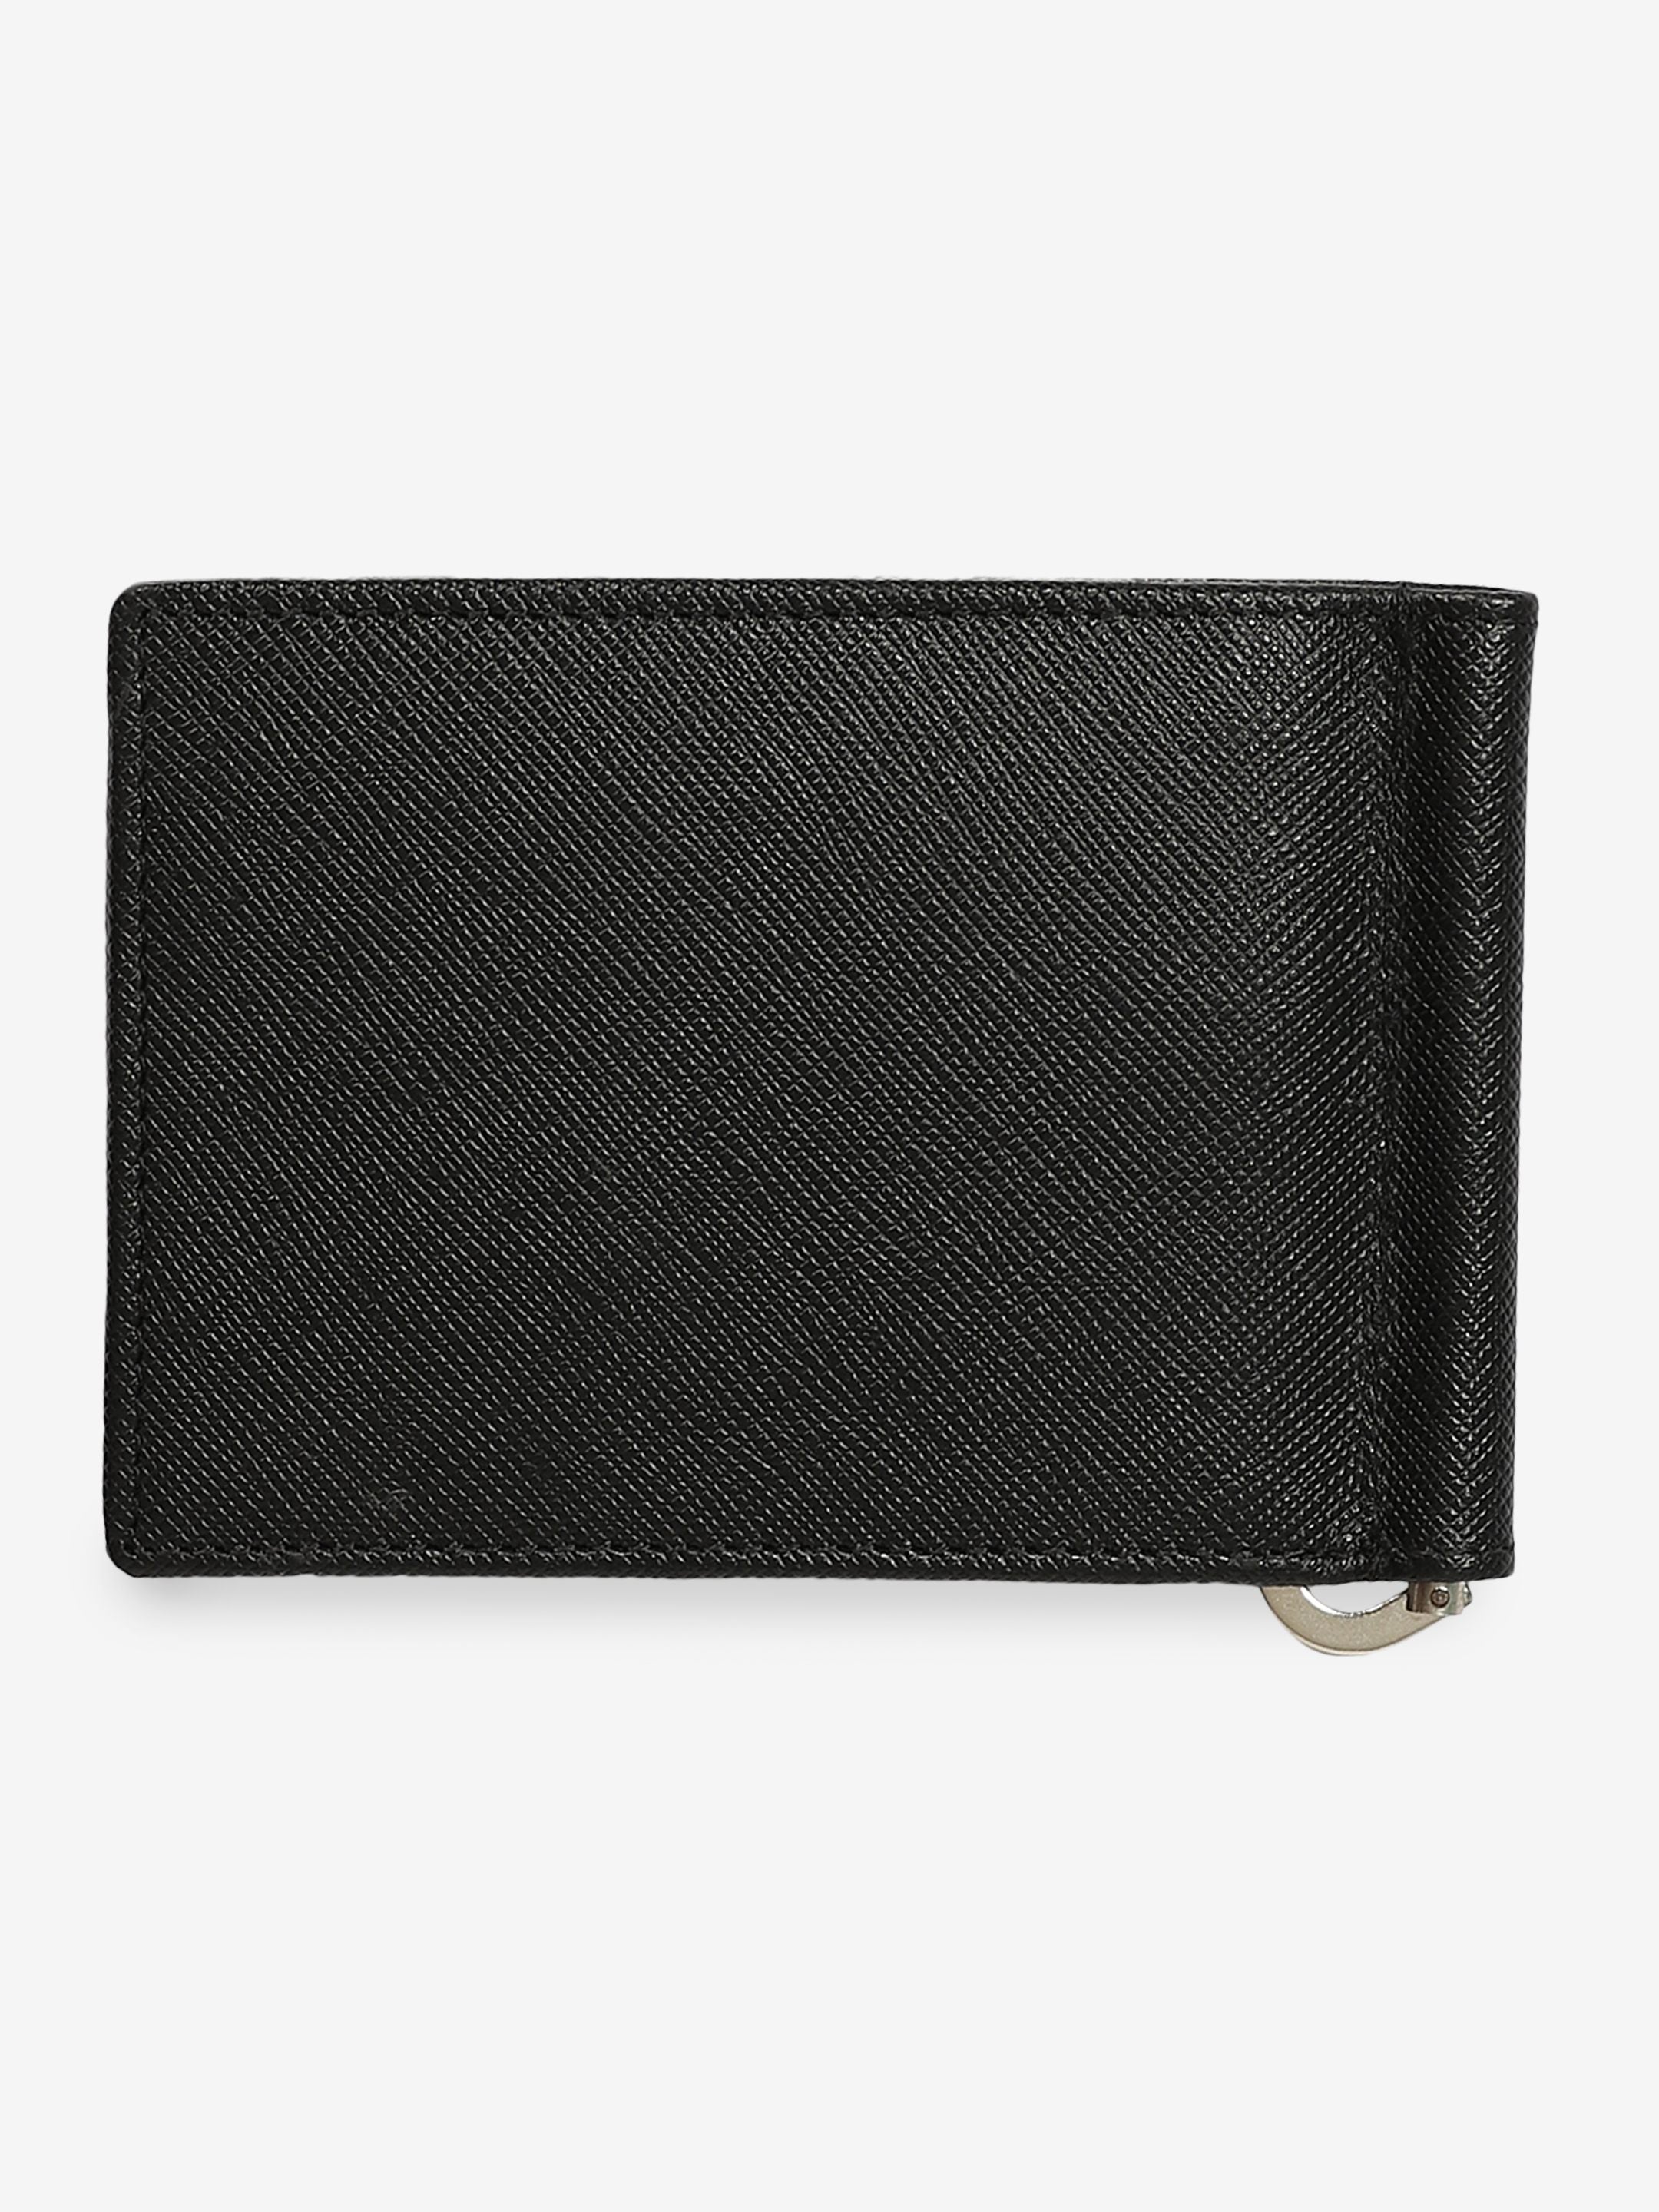 Buy Tan Wallets for Men by KARA Online | Ajio.com